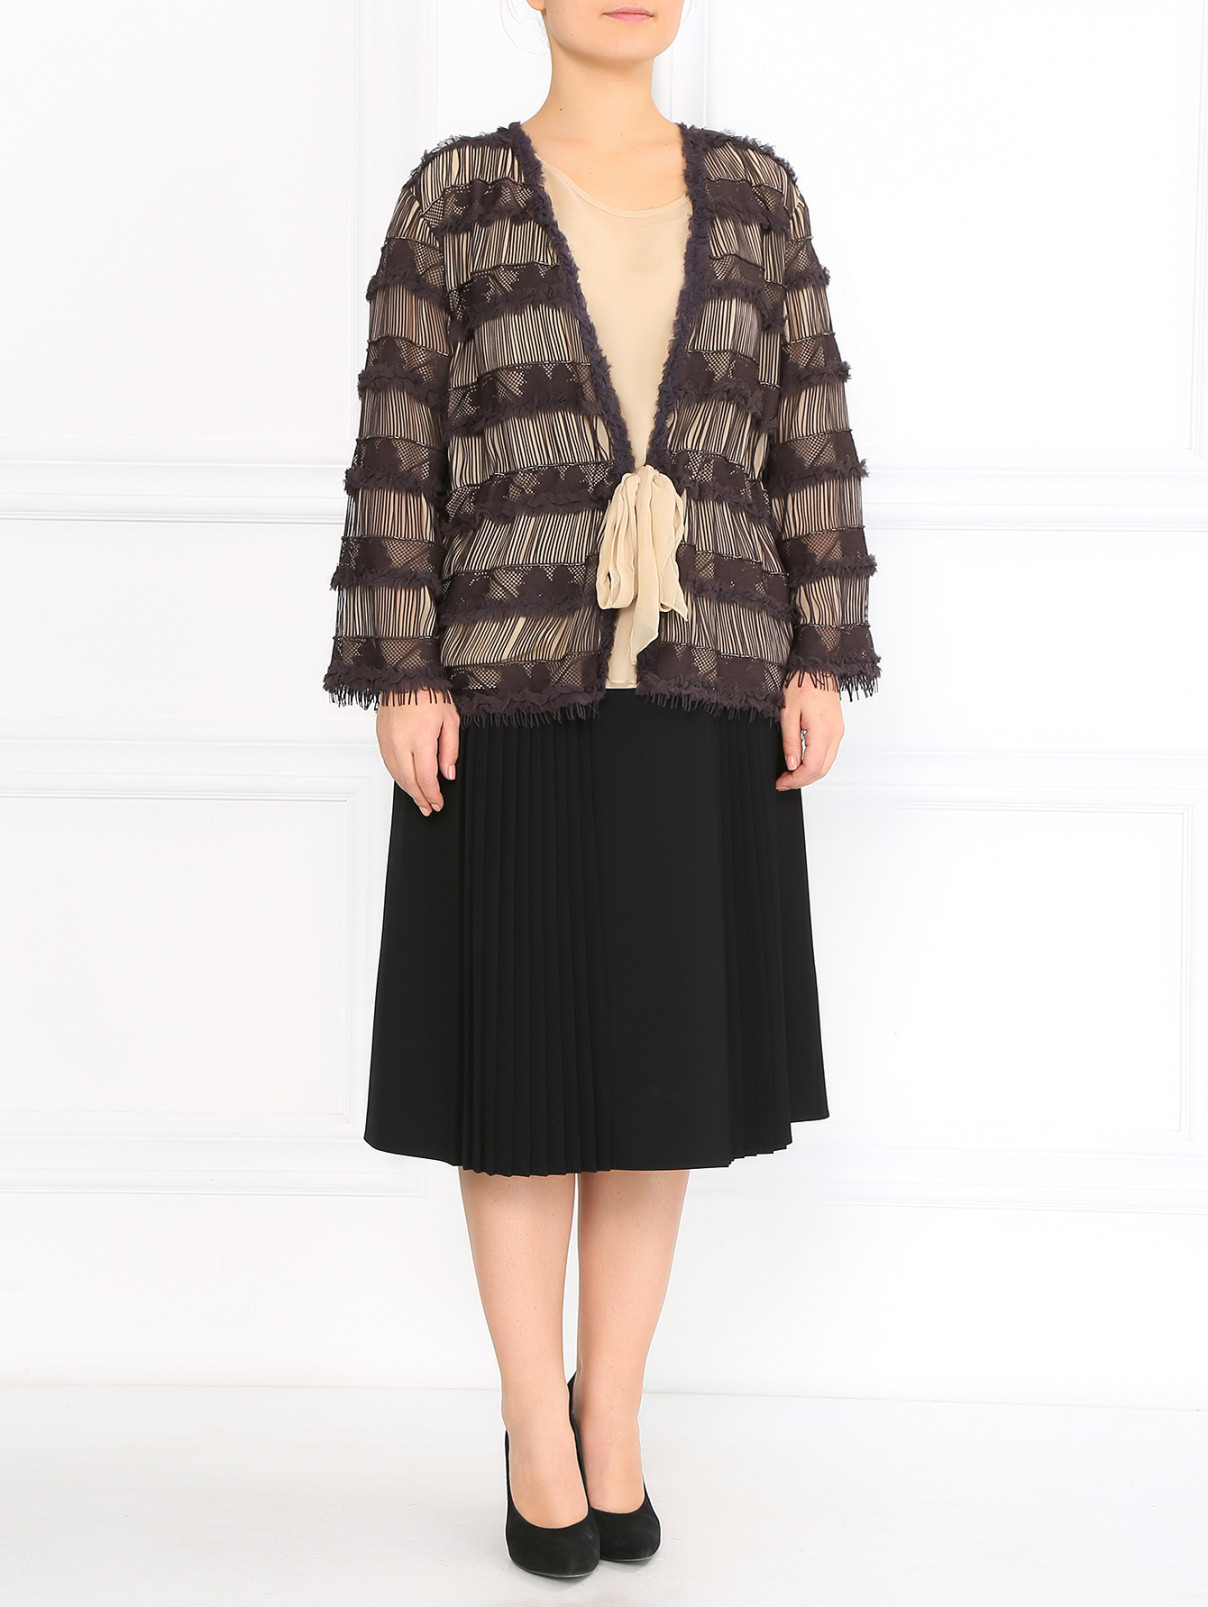 Блуза с короткими рукавами и жакетом с вышивкой в комплекте Marina Rinaldi  –  Модель Общий вид  – Цвет:  Коричневый